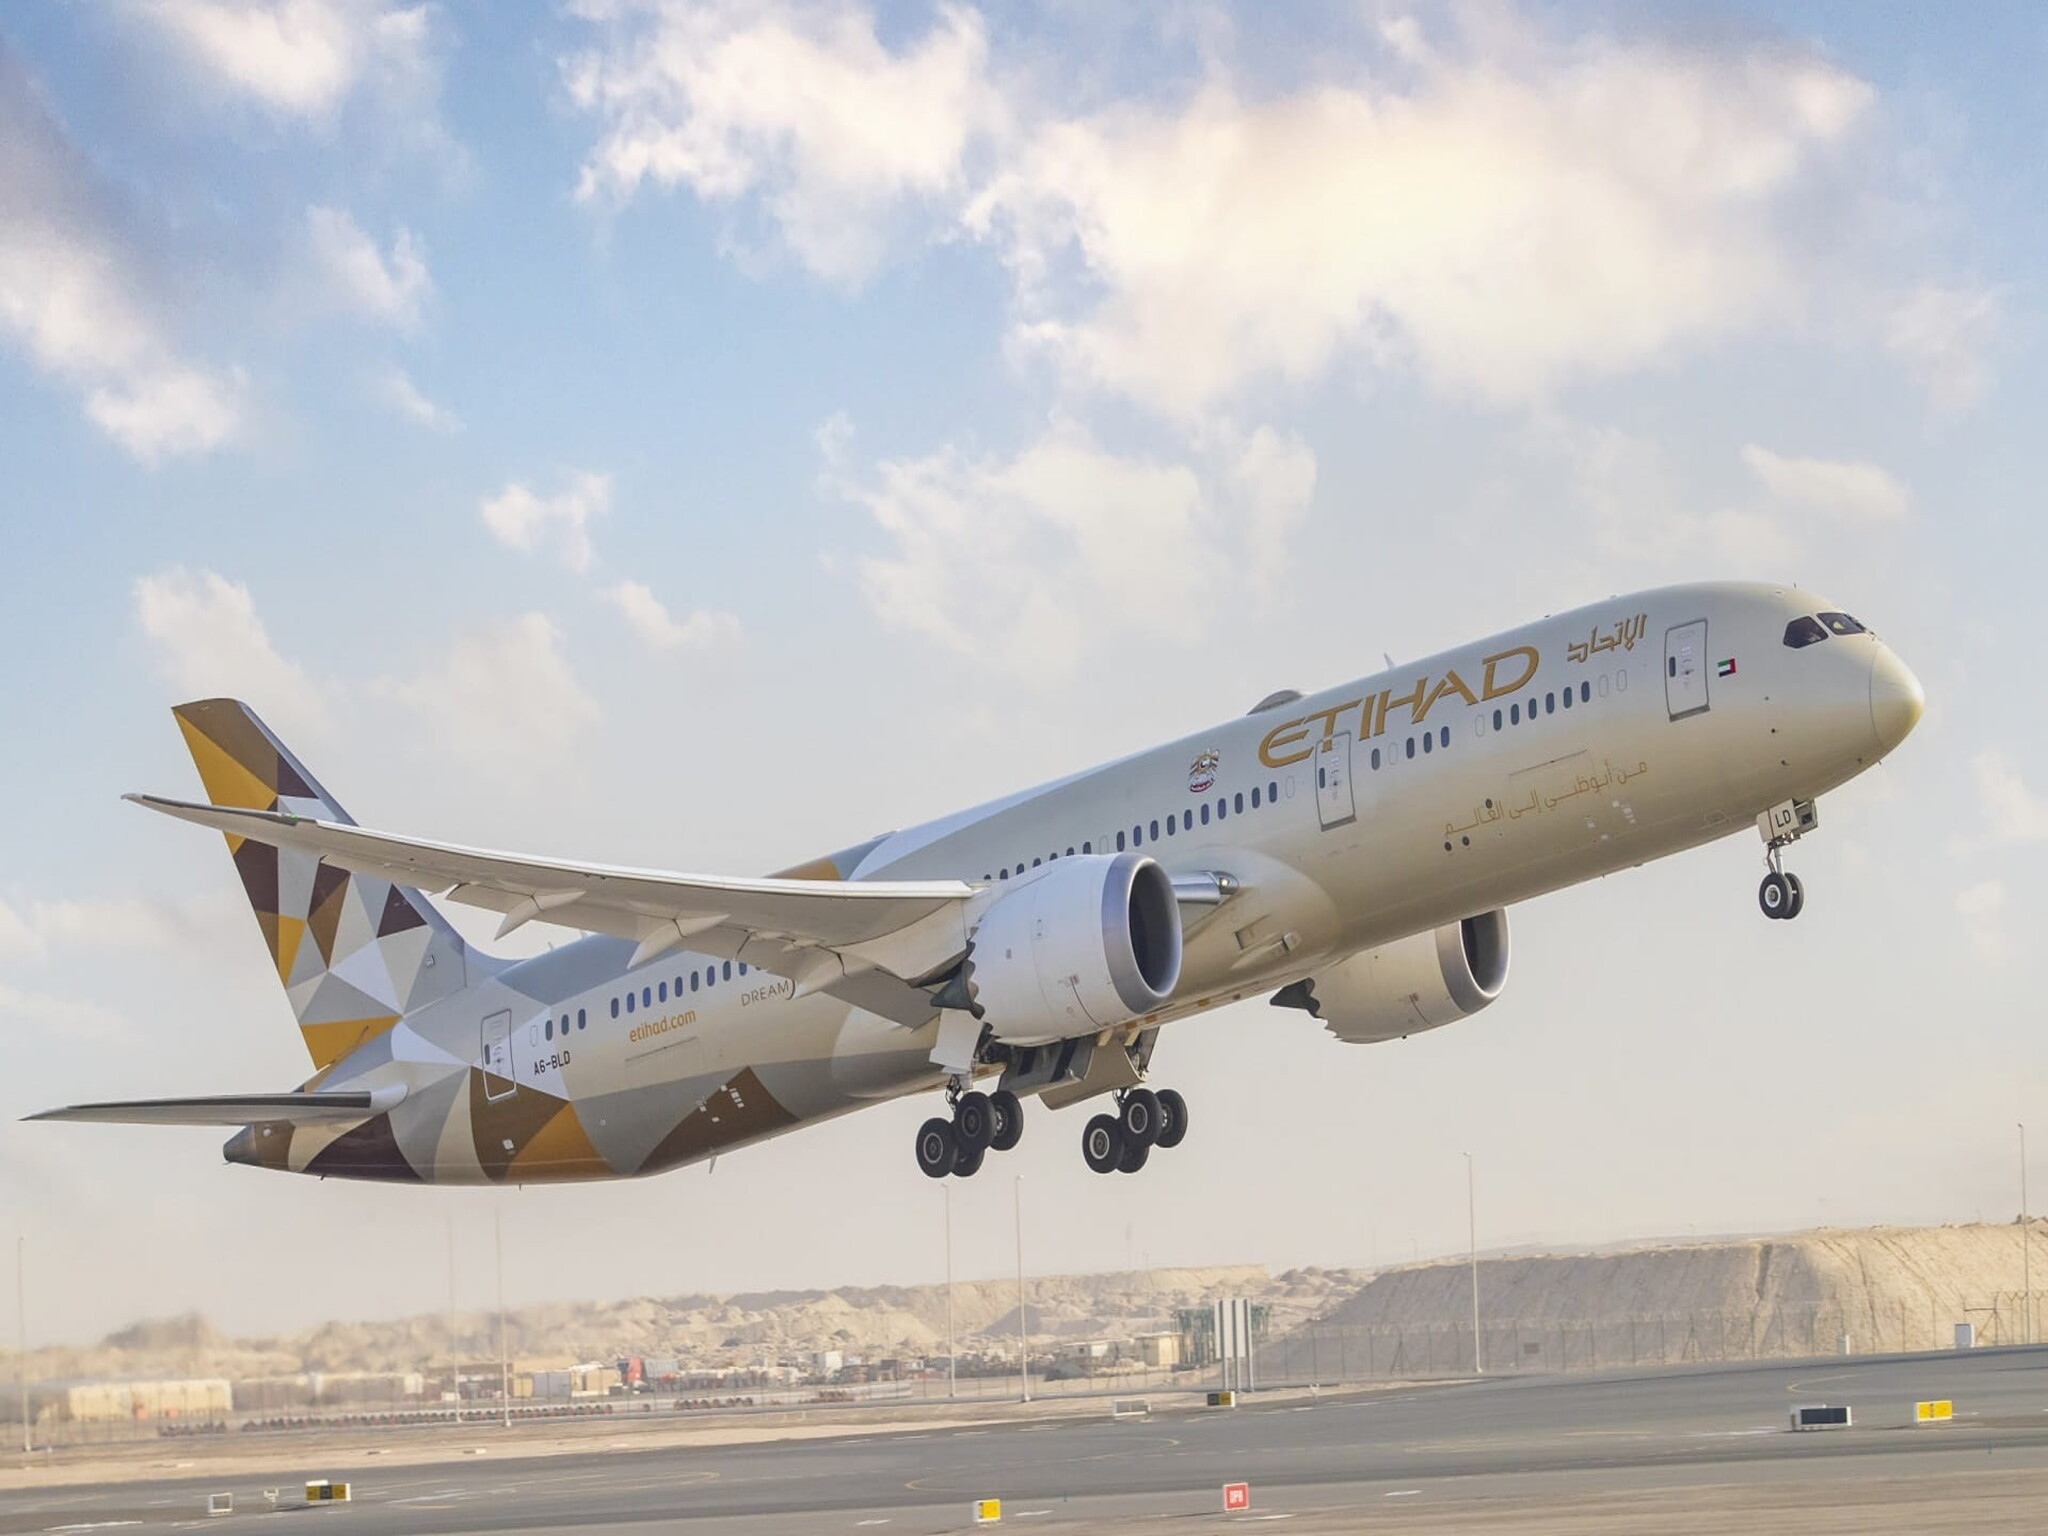 الاتحاد للطيران تبدأ في إستئناف رحلاتها يوم غد الإثنين بين أبوظبي وتل أبيب وعمان